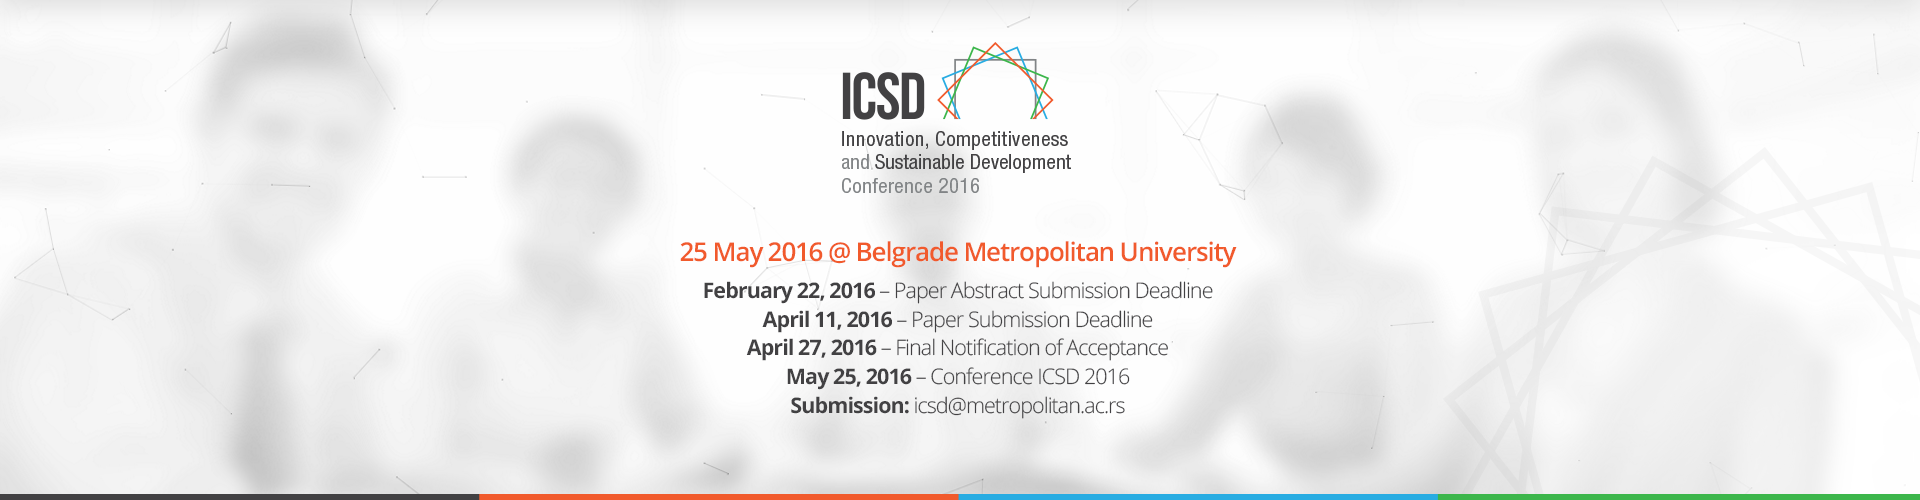 Rok za slanje radova 11. april – ICSD konferencija